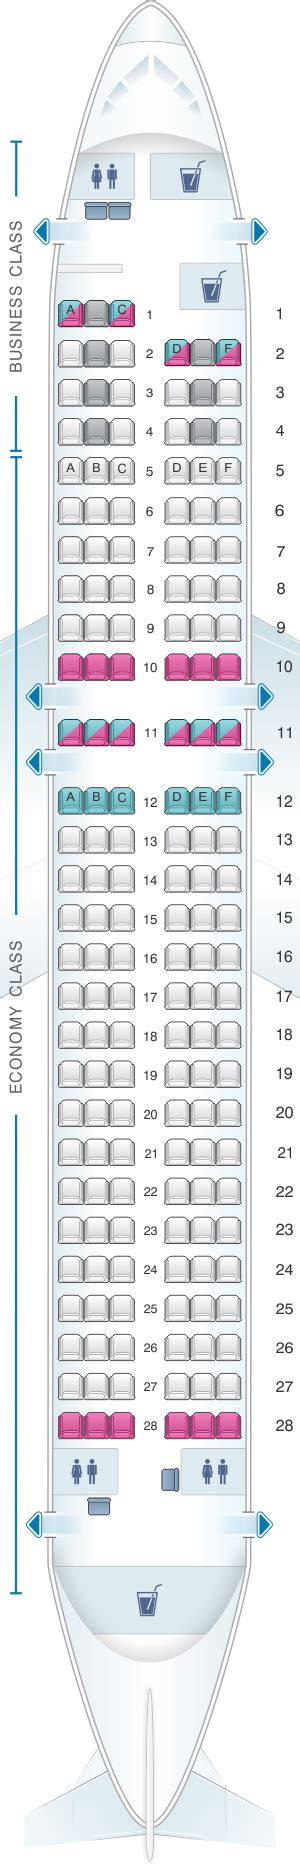 Seat Map Finnair Airbus A320 Seatmaestro